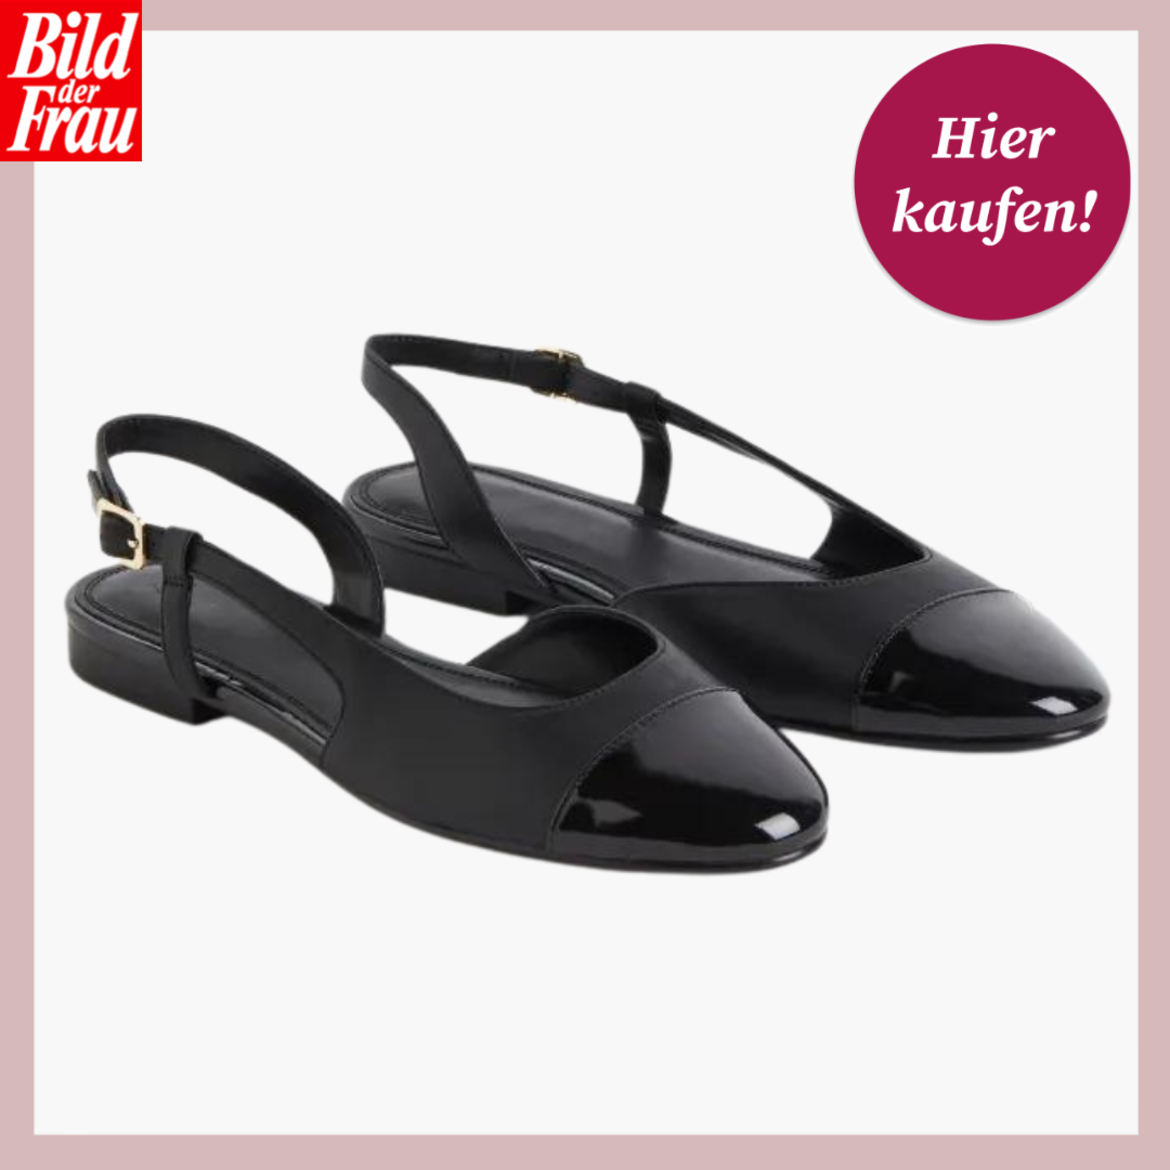 Werbebild von Slingeback-Ballerinas in Schwarz. Die Schuhe haben eine Lackkappe und Riemen an der Ferse. | © H&M